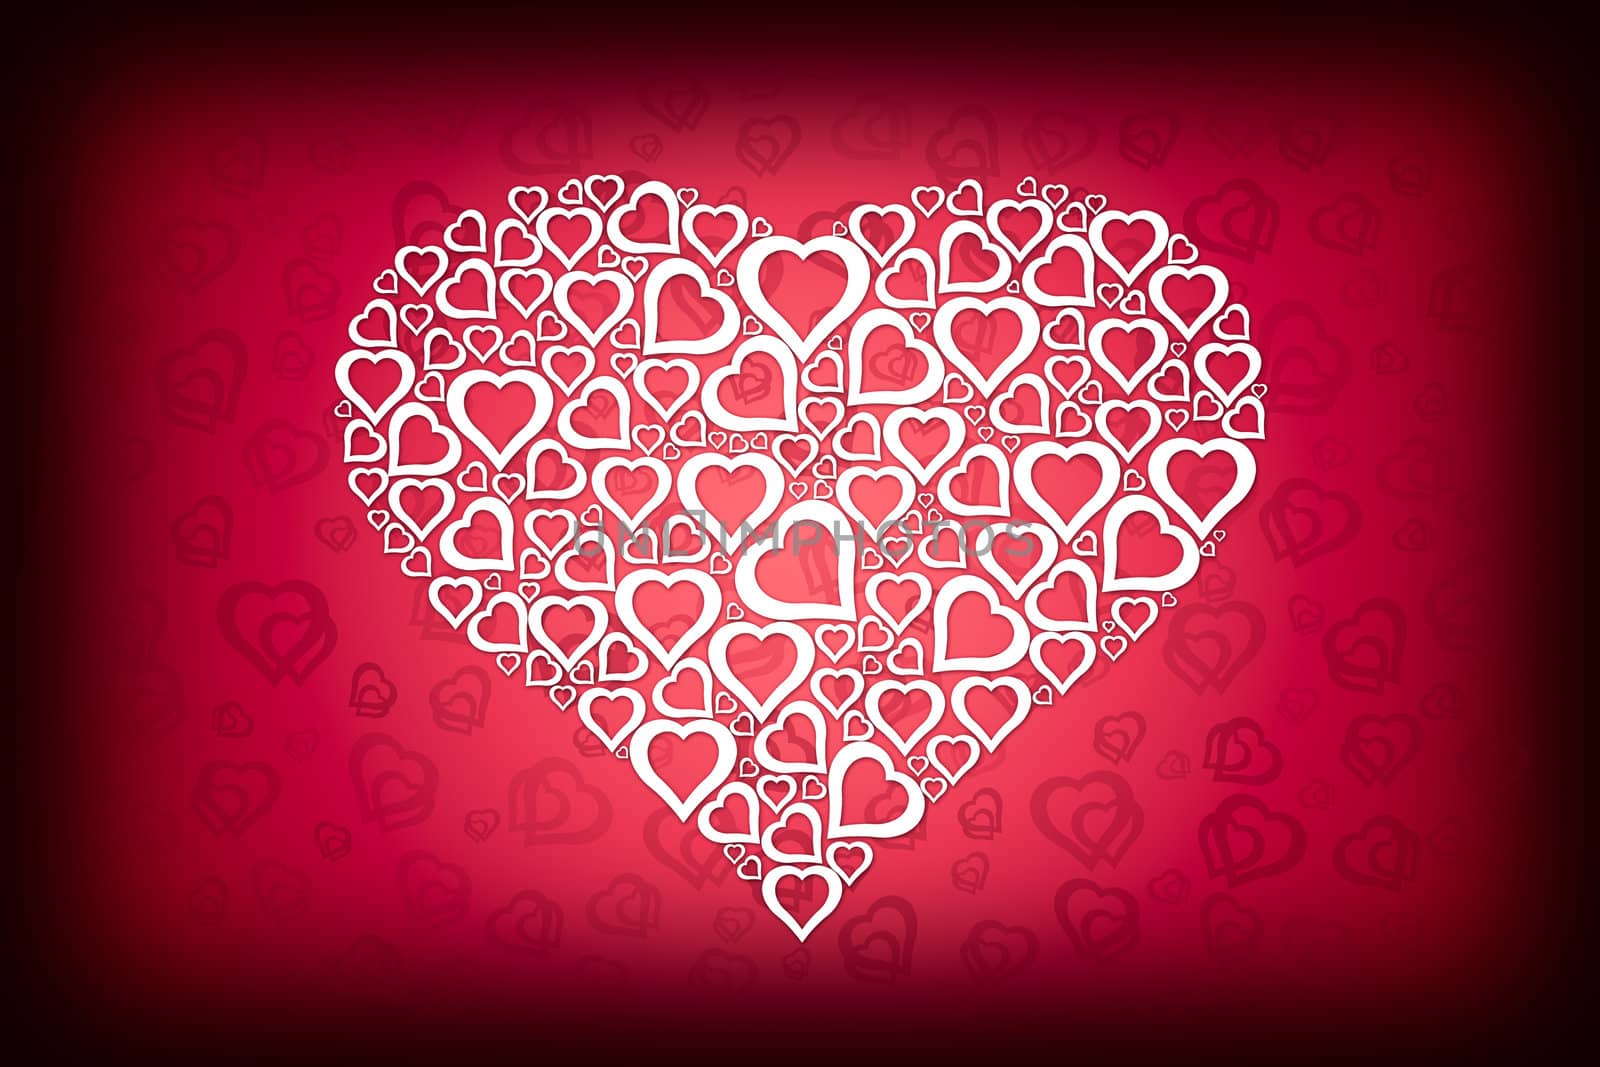 White Valentine on Red Heart Background by scheriton